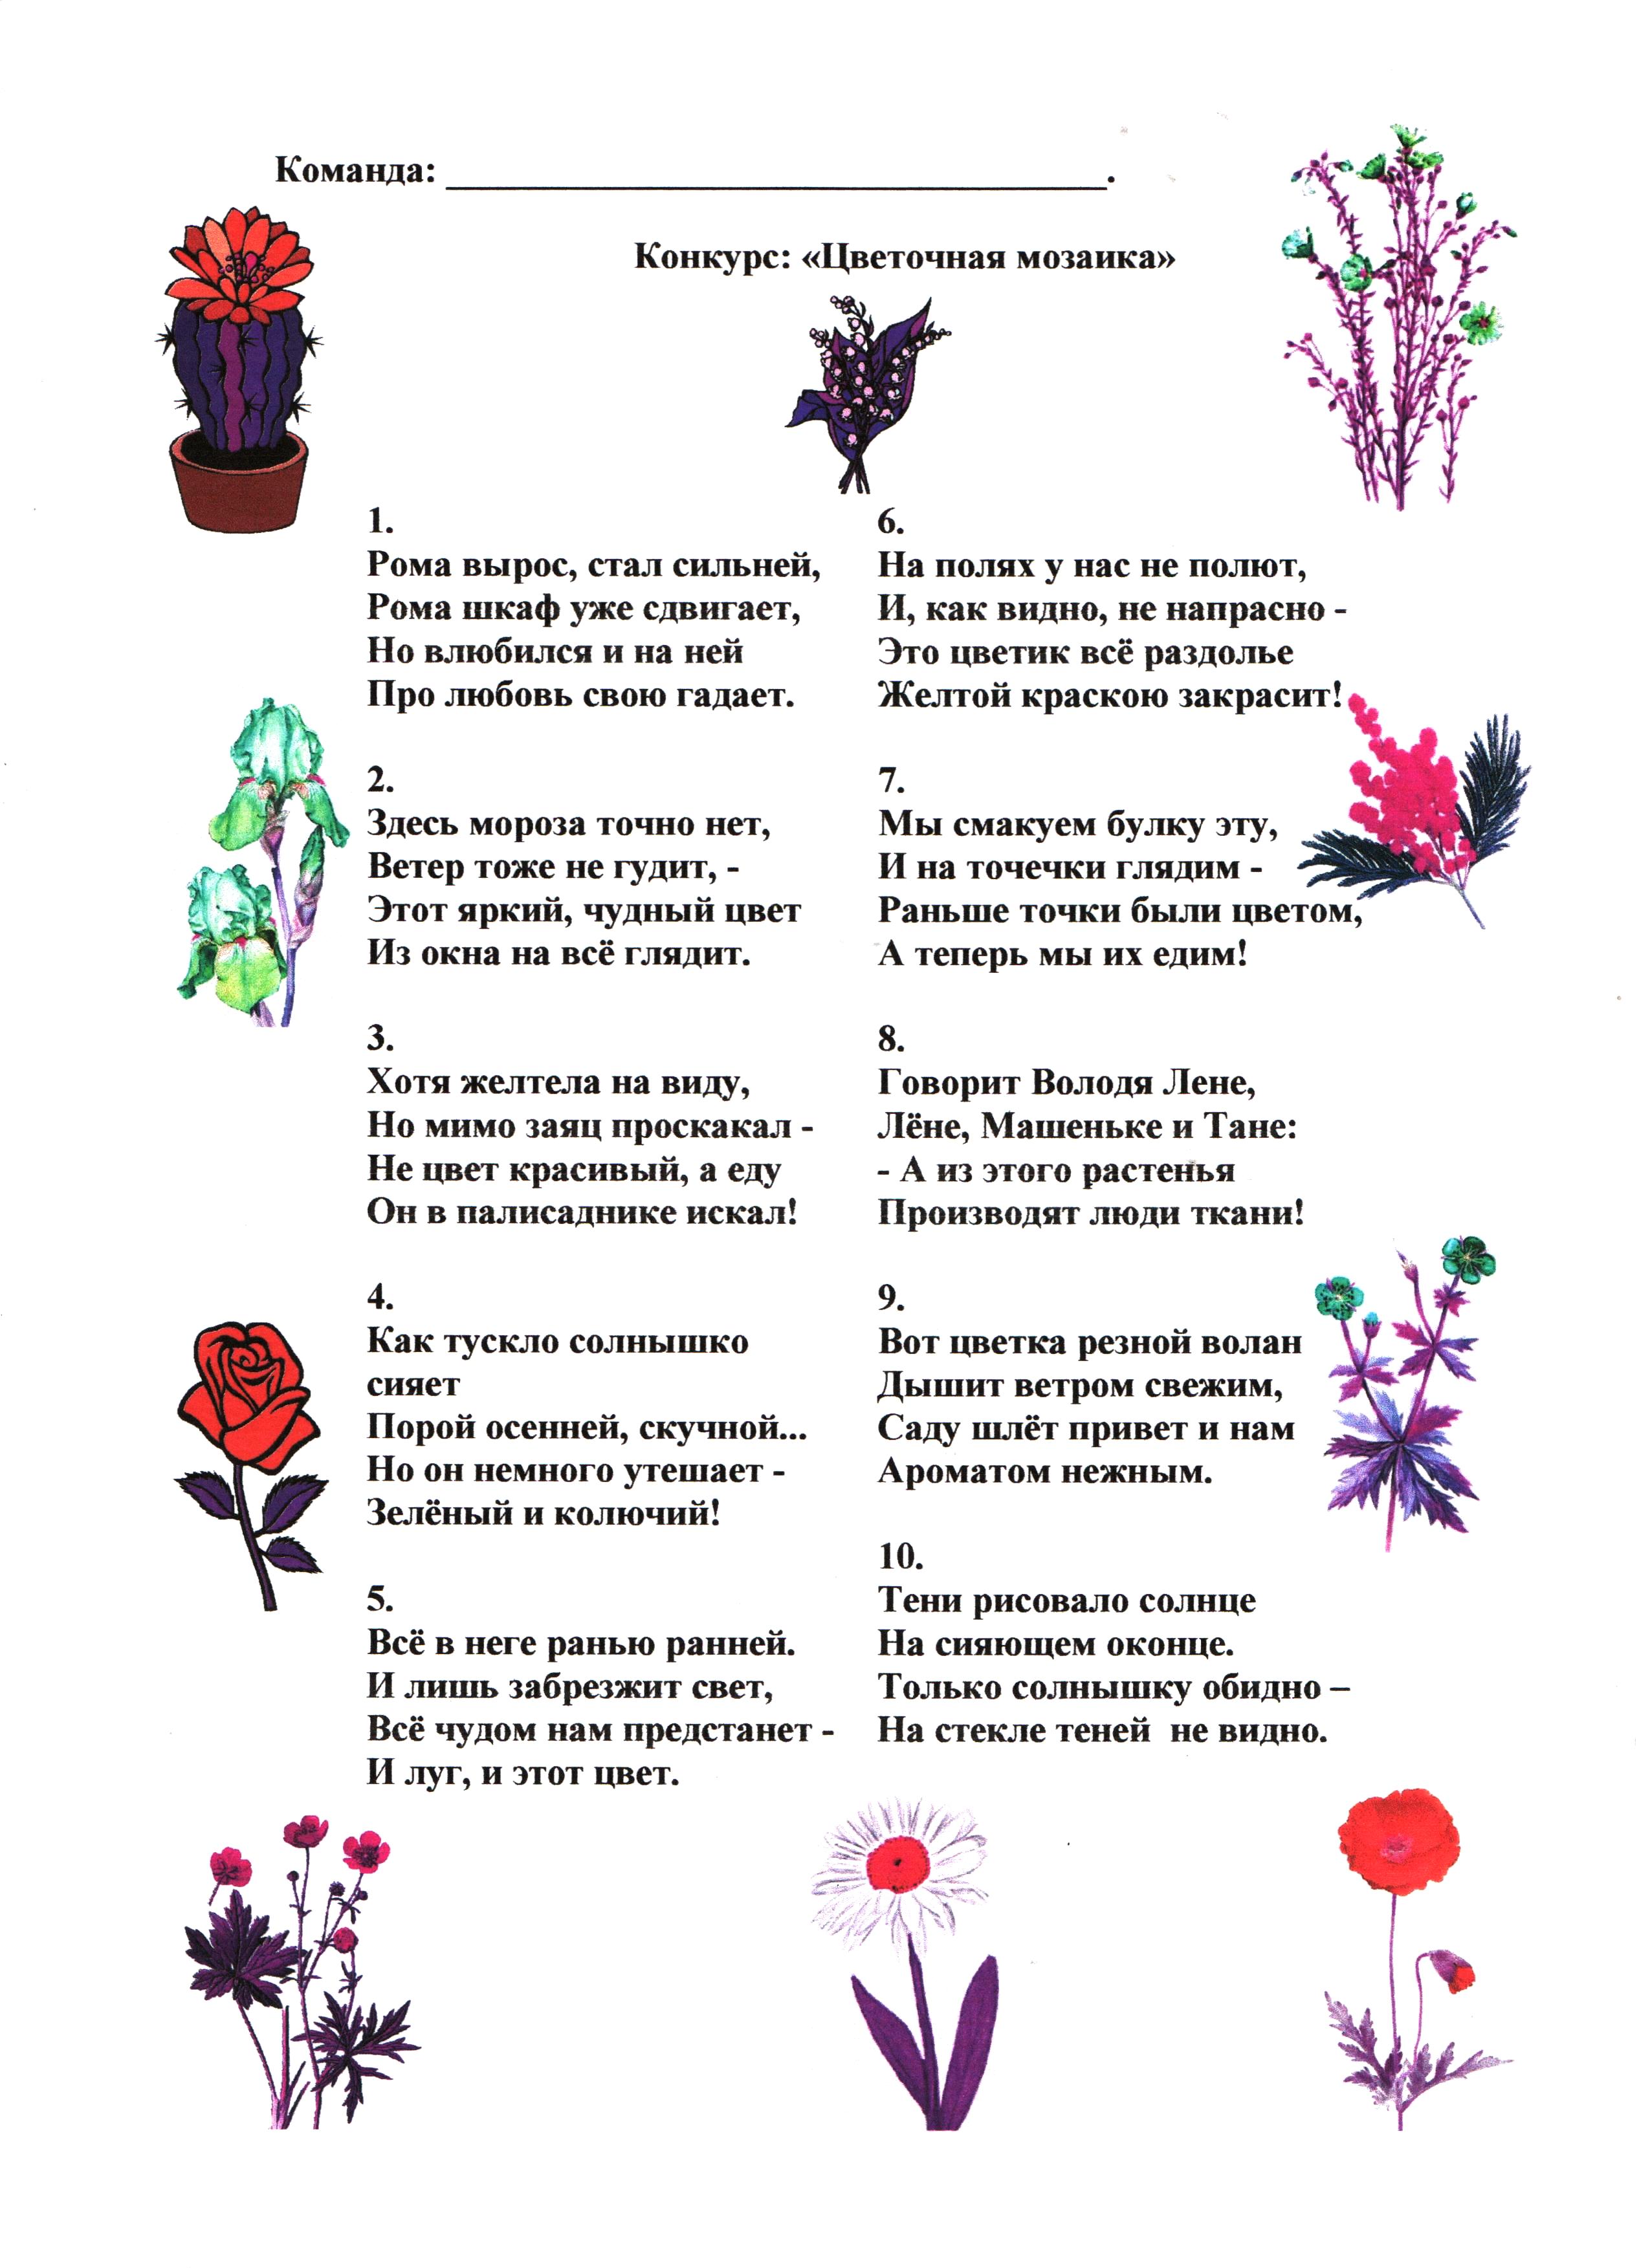 Загадки о растениях 1 класс. Загадки для детей 7 -8 с ответами про растения. Загадки про цветы с прилагательными. Загадки про цветы. Загадки про цветы для детей.